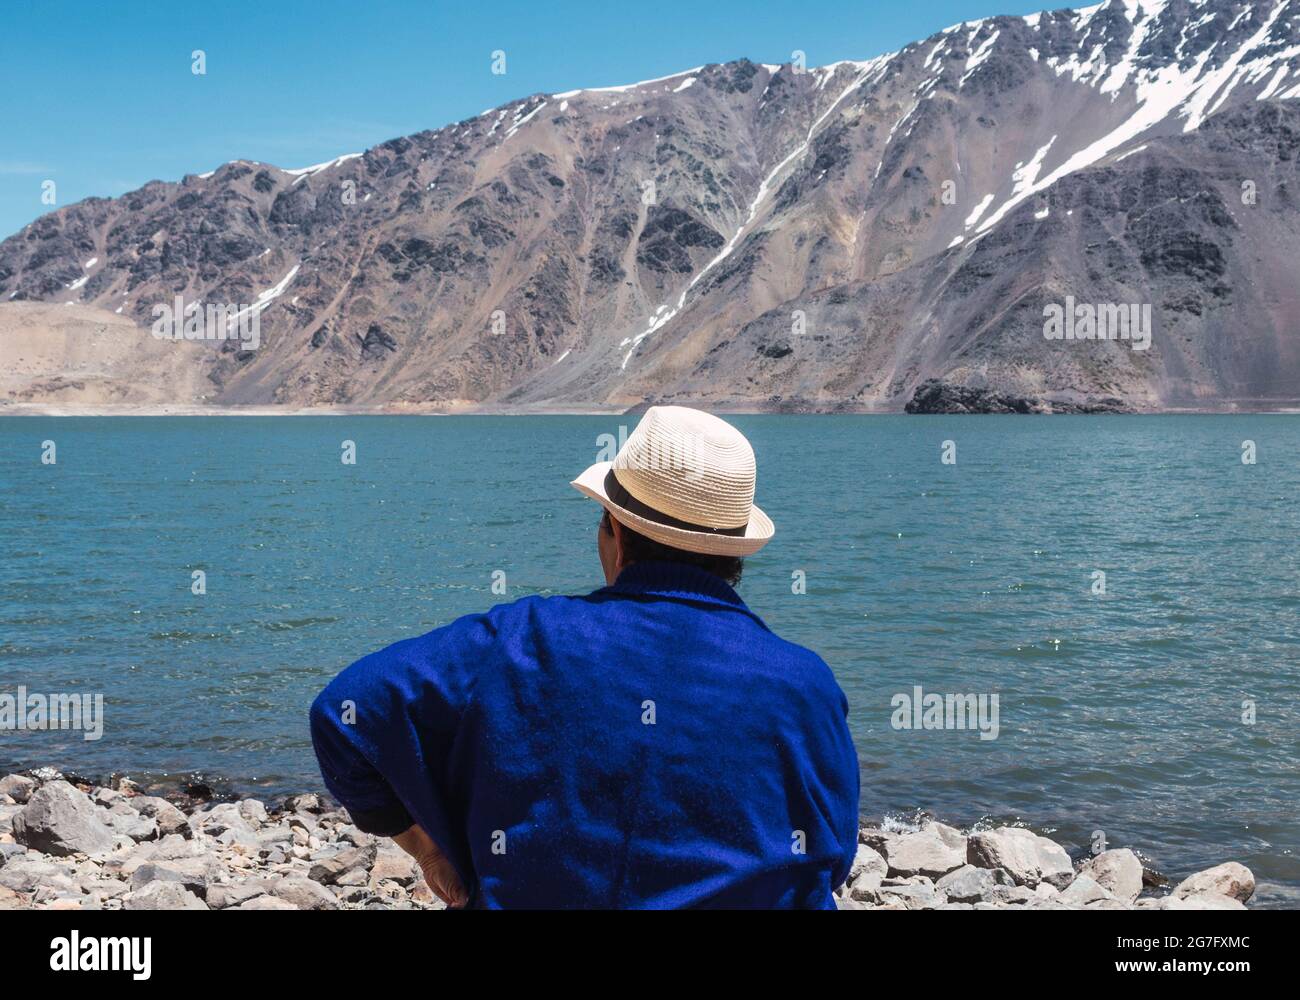 Mujer sentada viendo el paisaje Stock Photo